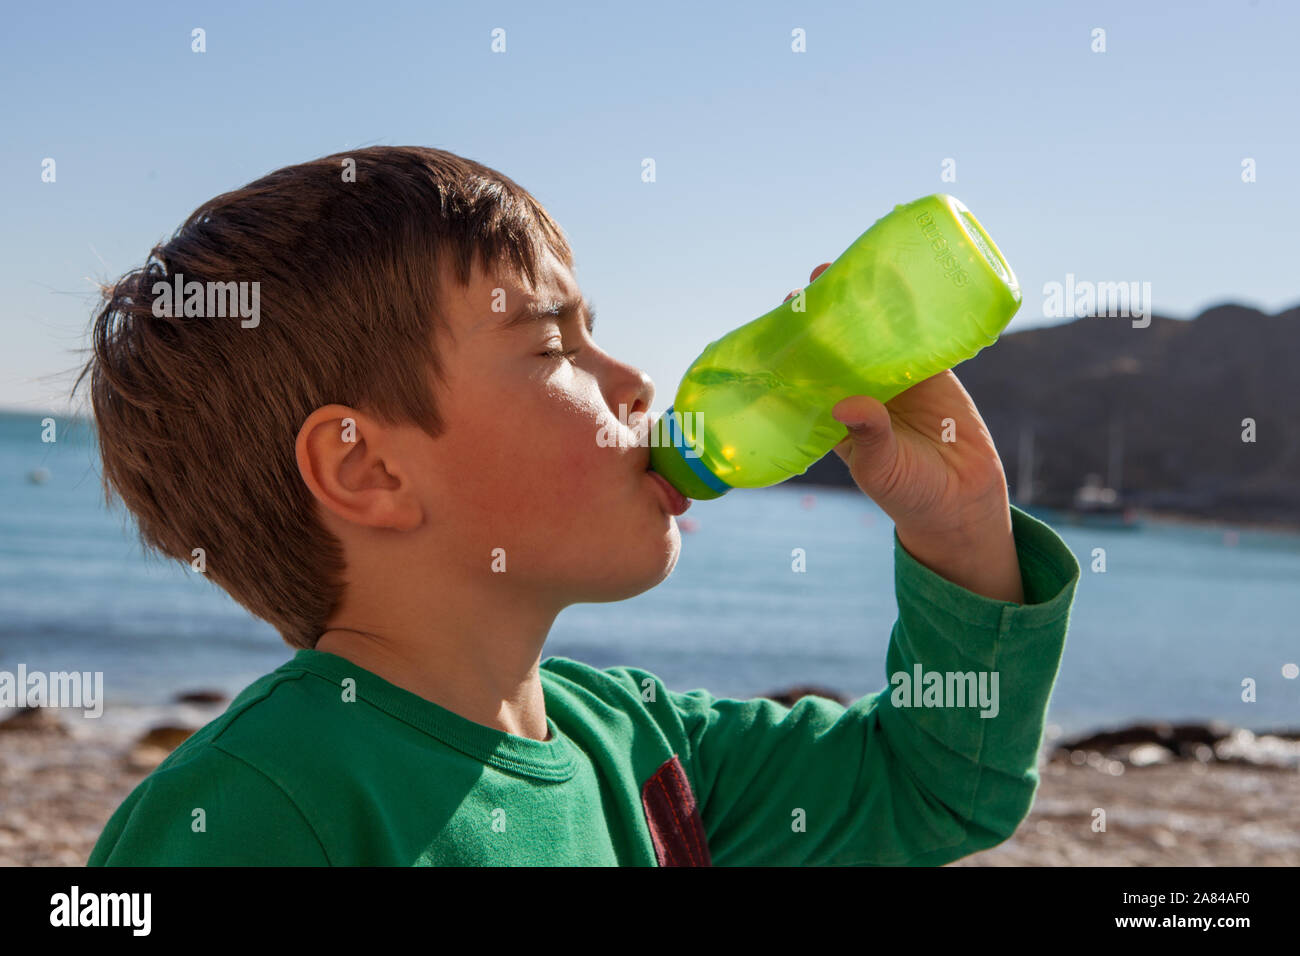 Ein kleiner Junge trinkt Wasser aus einer Wasserflasche an einem heißen Sommertag am Strand, England. Stockfoto